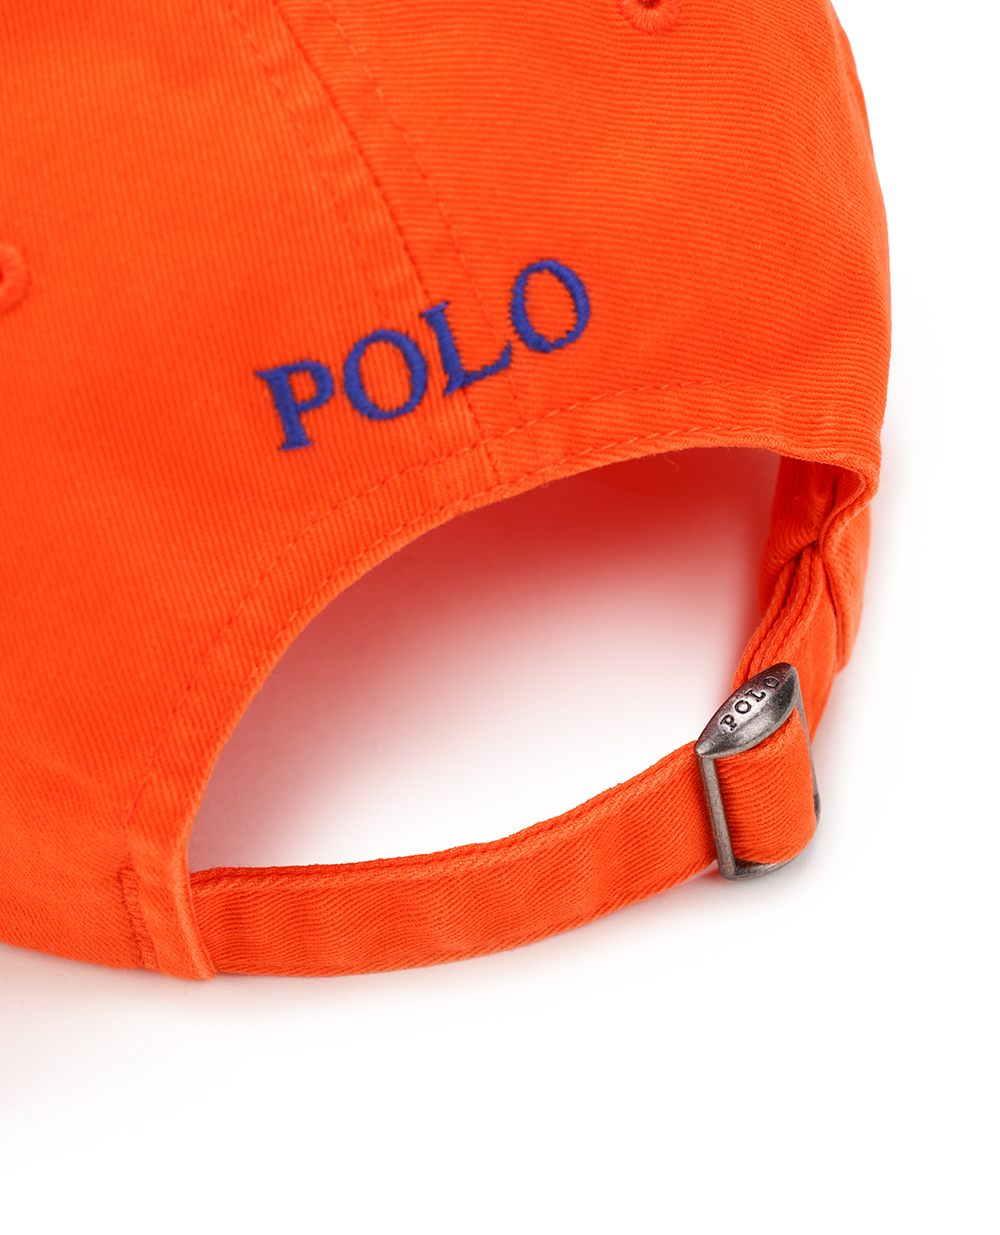 Бейсболка Polo Ralph Lauren 710667709014, оранжевый цвет • Купить в интернет-магазине Kameron